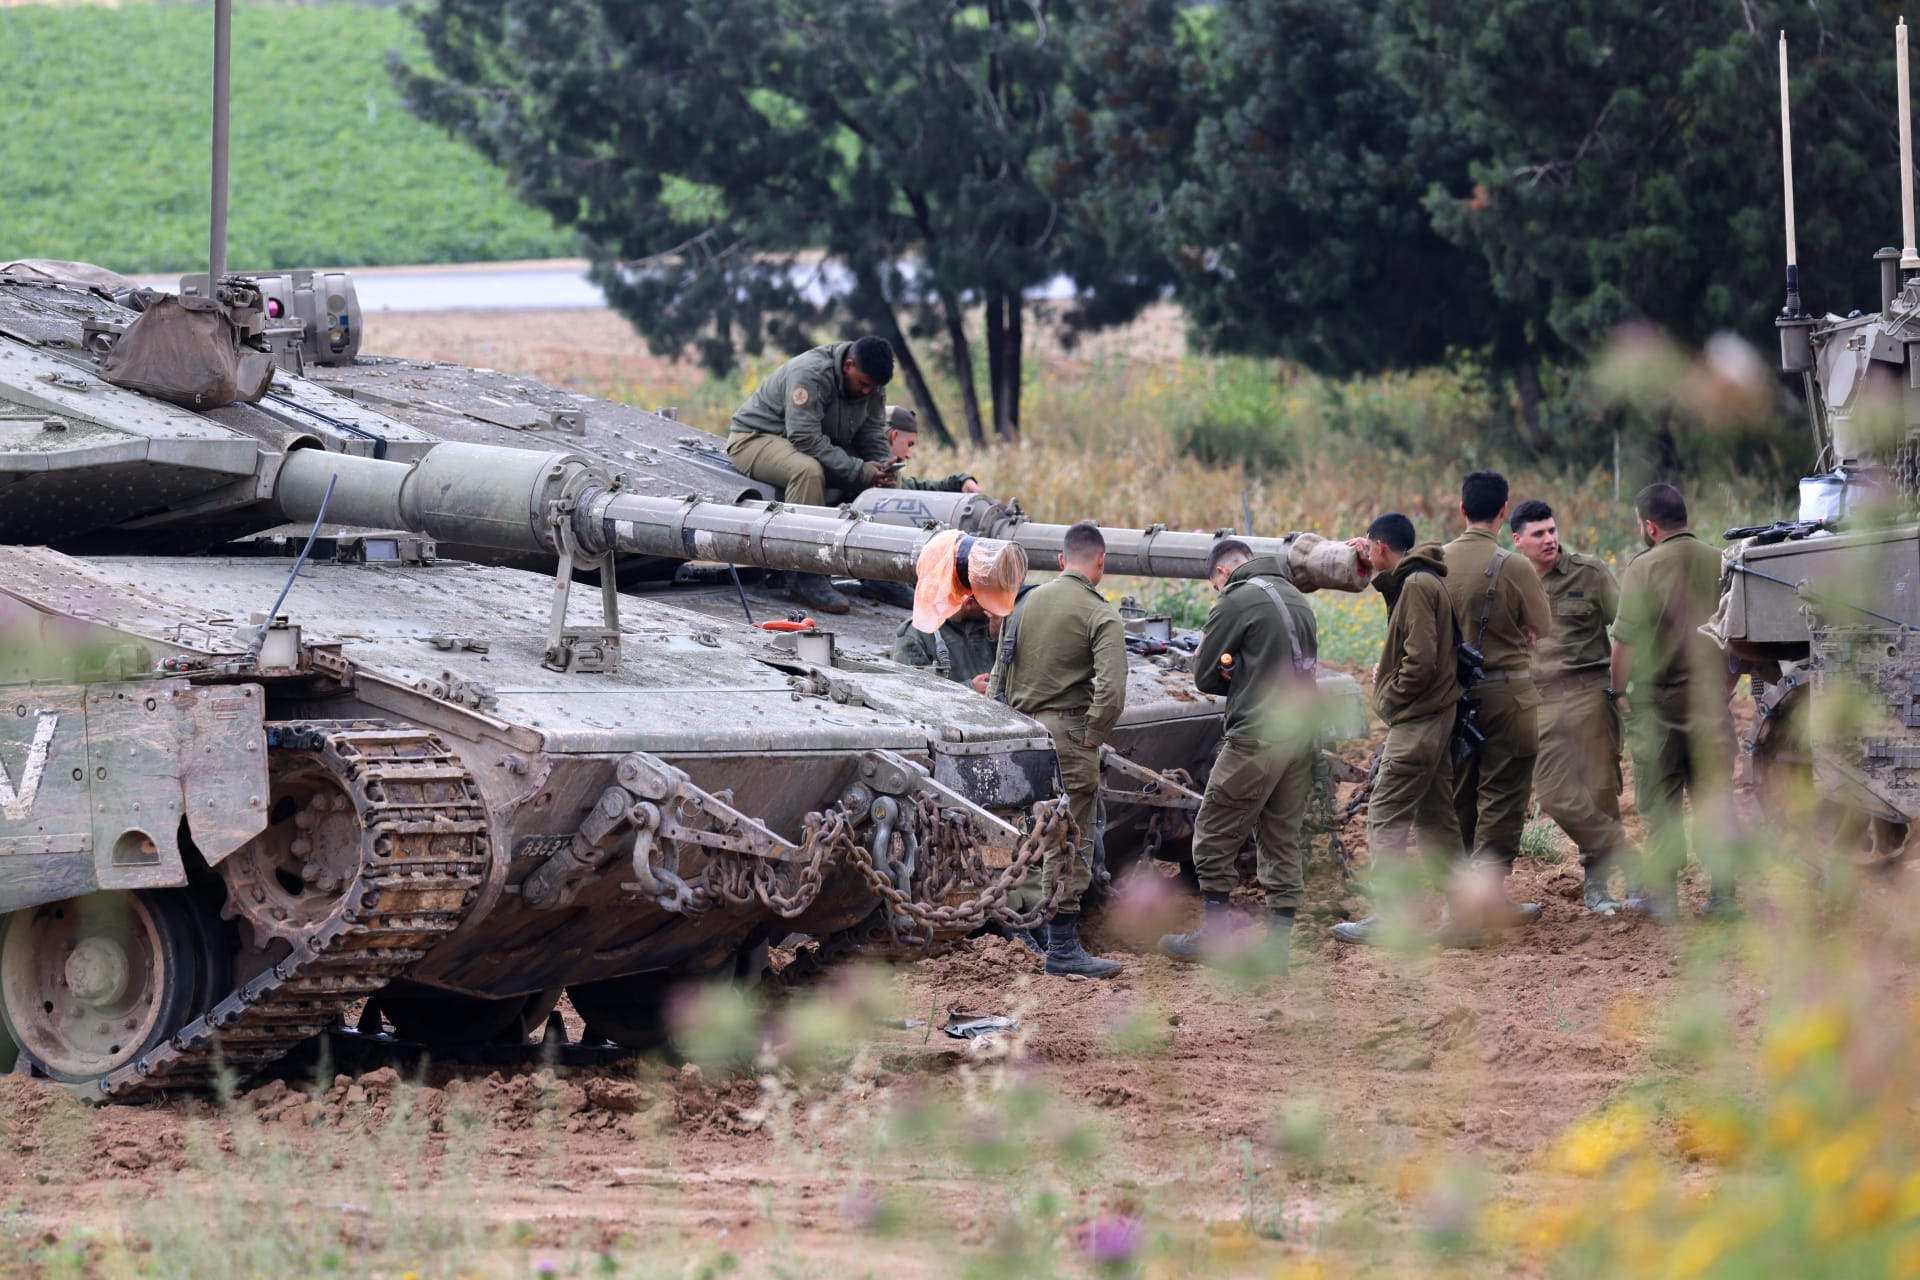 الجيش الإسرائيلي يستدعي نحو لواءين من الاحتياط للمشاركة في "الأنشطة العملياتية" بغزة